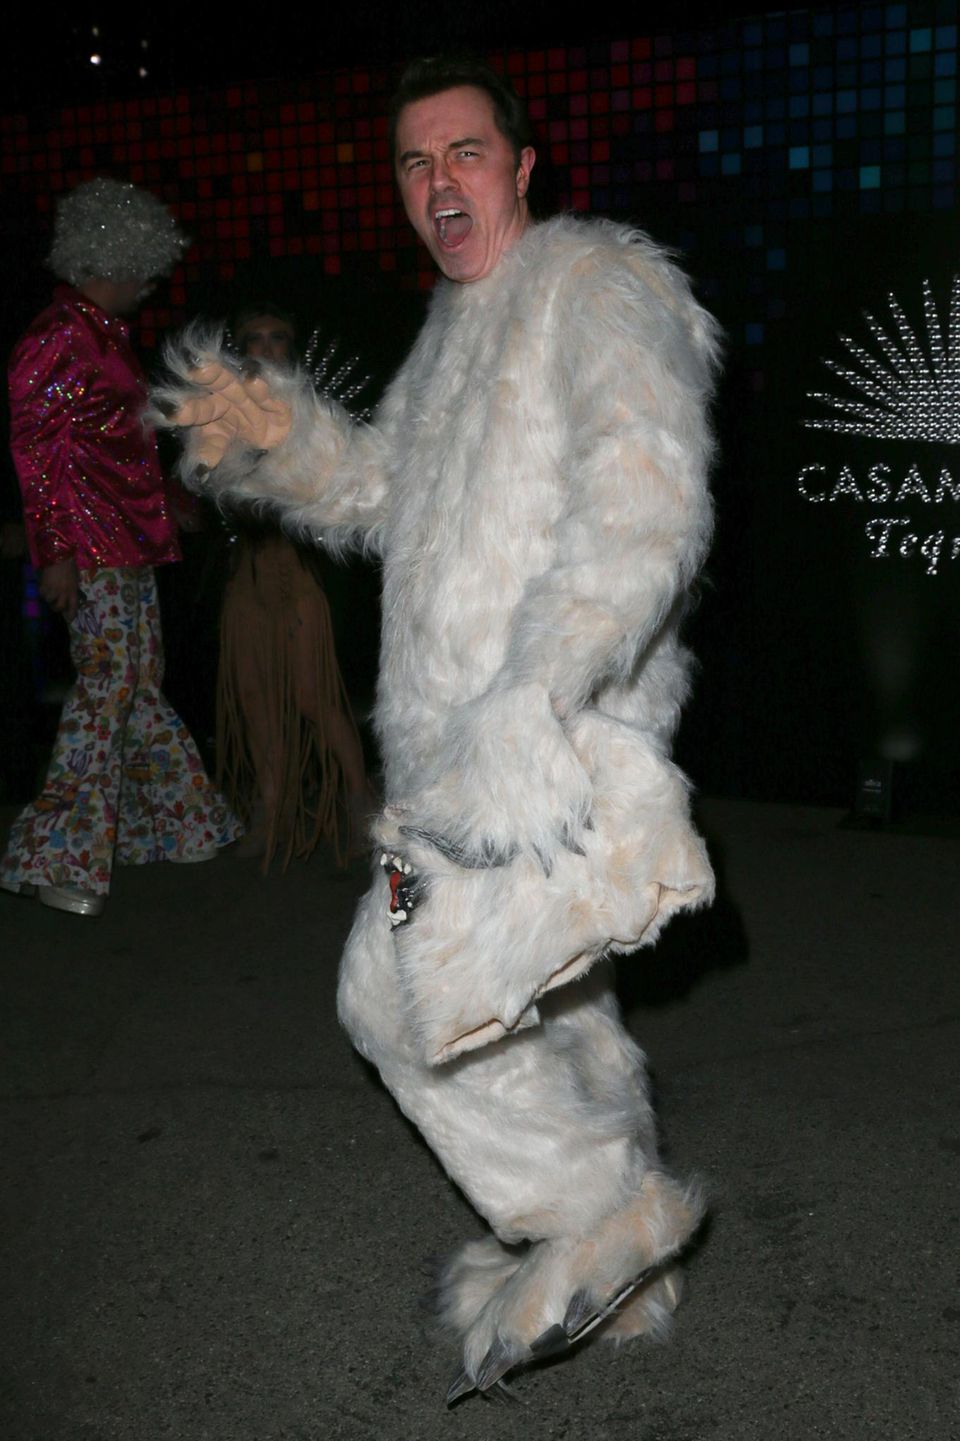 Kommen wir zu einer beliebten Kategorie in puncto Halloween-Kostüm: Dem Tierreich. US-Moderator Seth MacFarlane entscheidet sich für einen Auftritt als Yeti. Wenn es unter der Maske zu heiß wird, kein Problem: Furchteinflössend gucken kann MacFarlane auch so. 